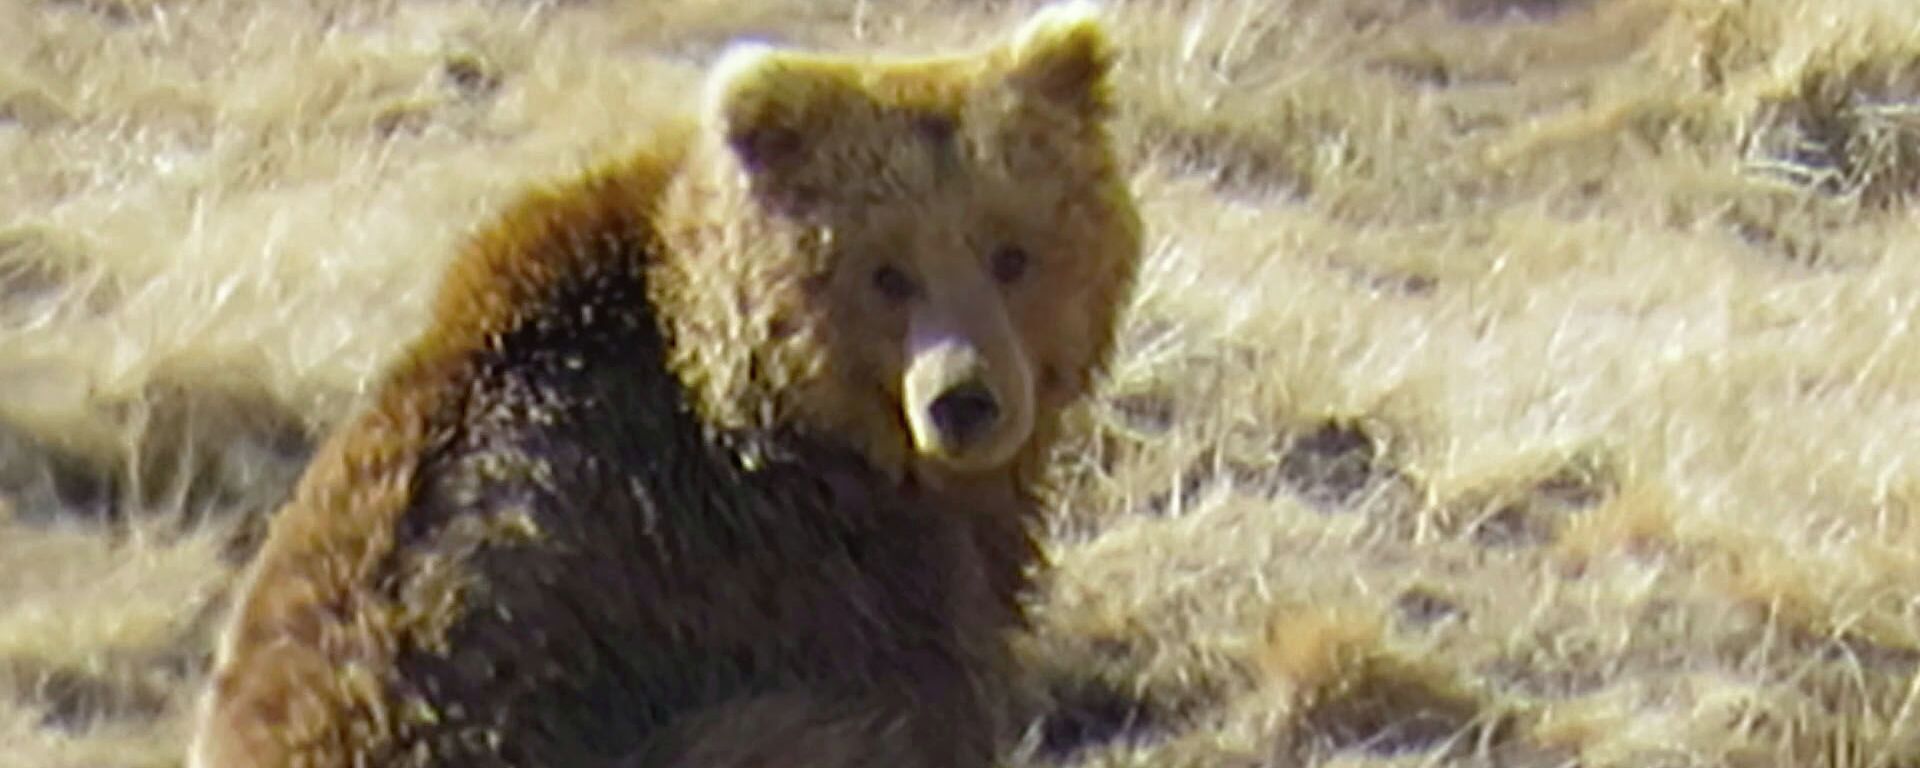 Кыргызстанец снял медведя в Иссык-Кульской области — уникальное видео - Sputnik Кыргызстан, 1920, 03.06.2021